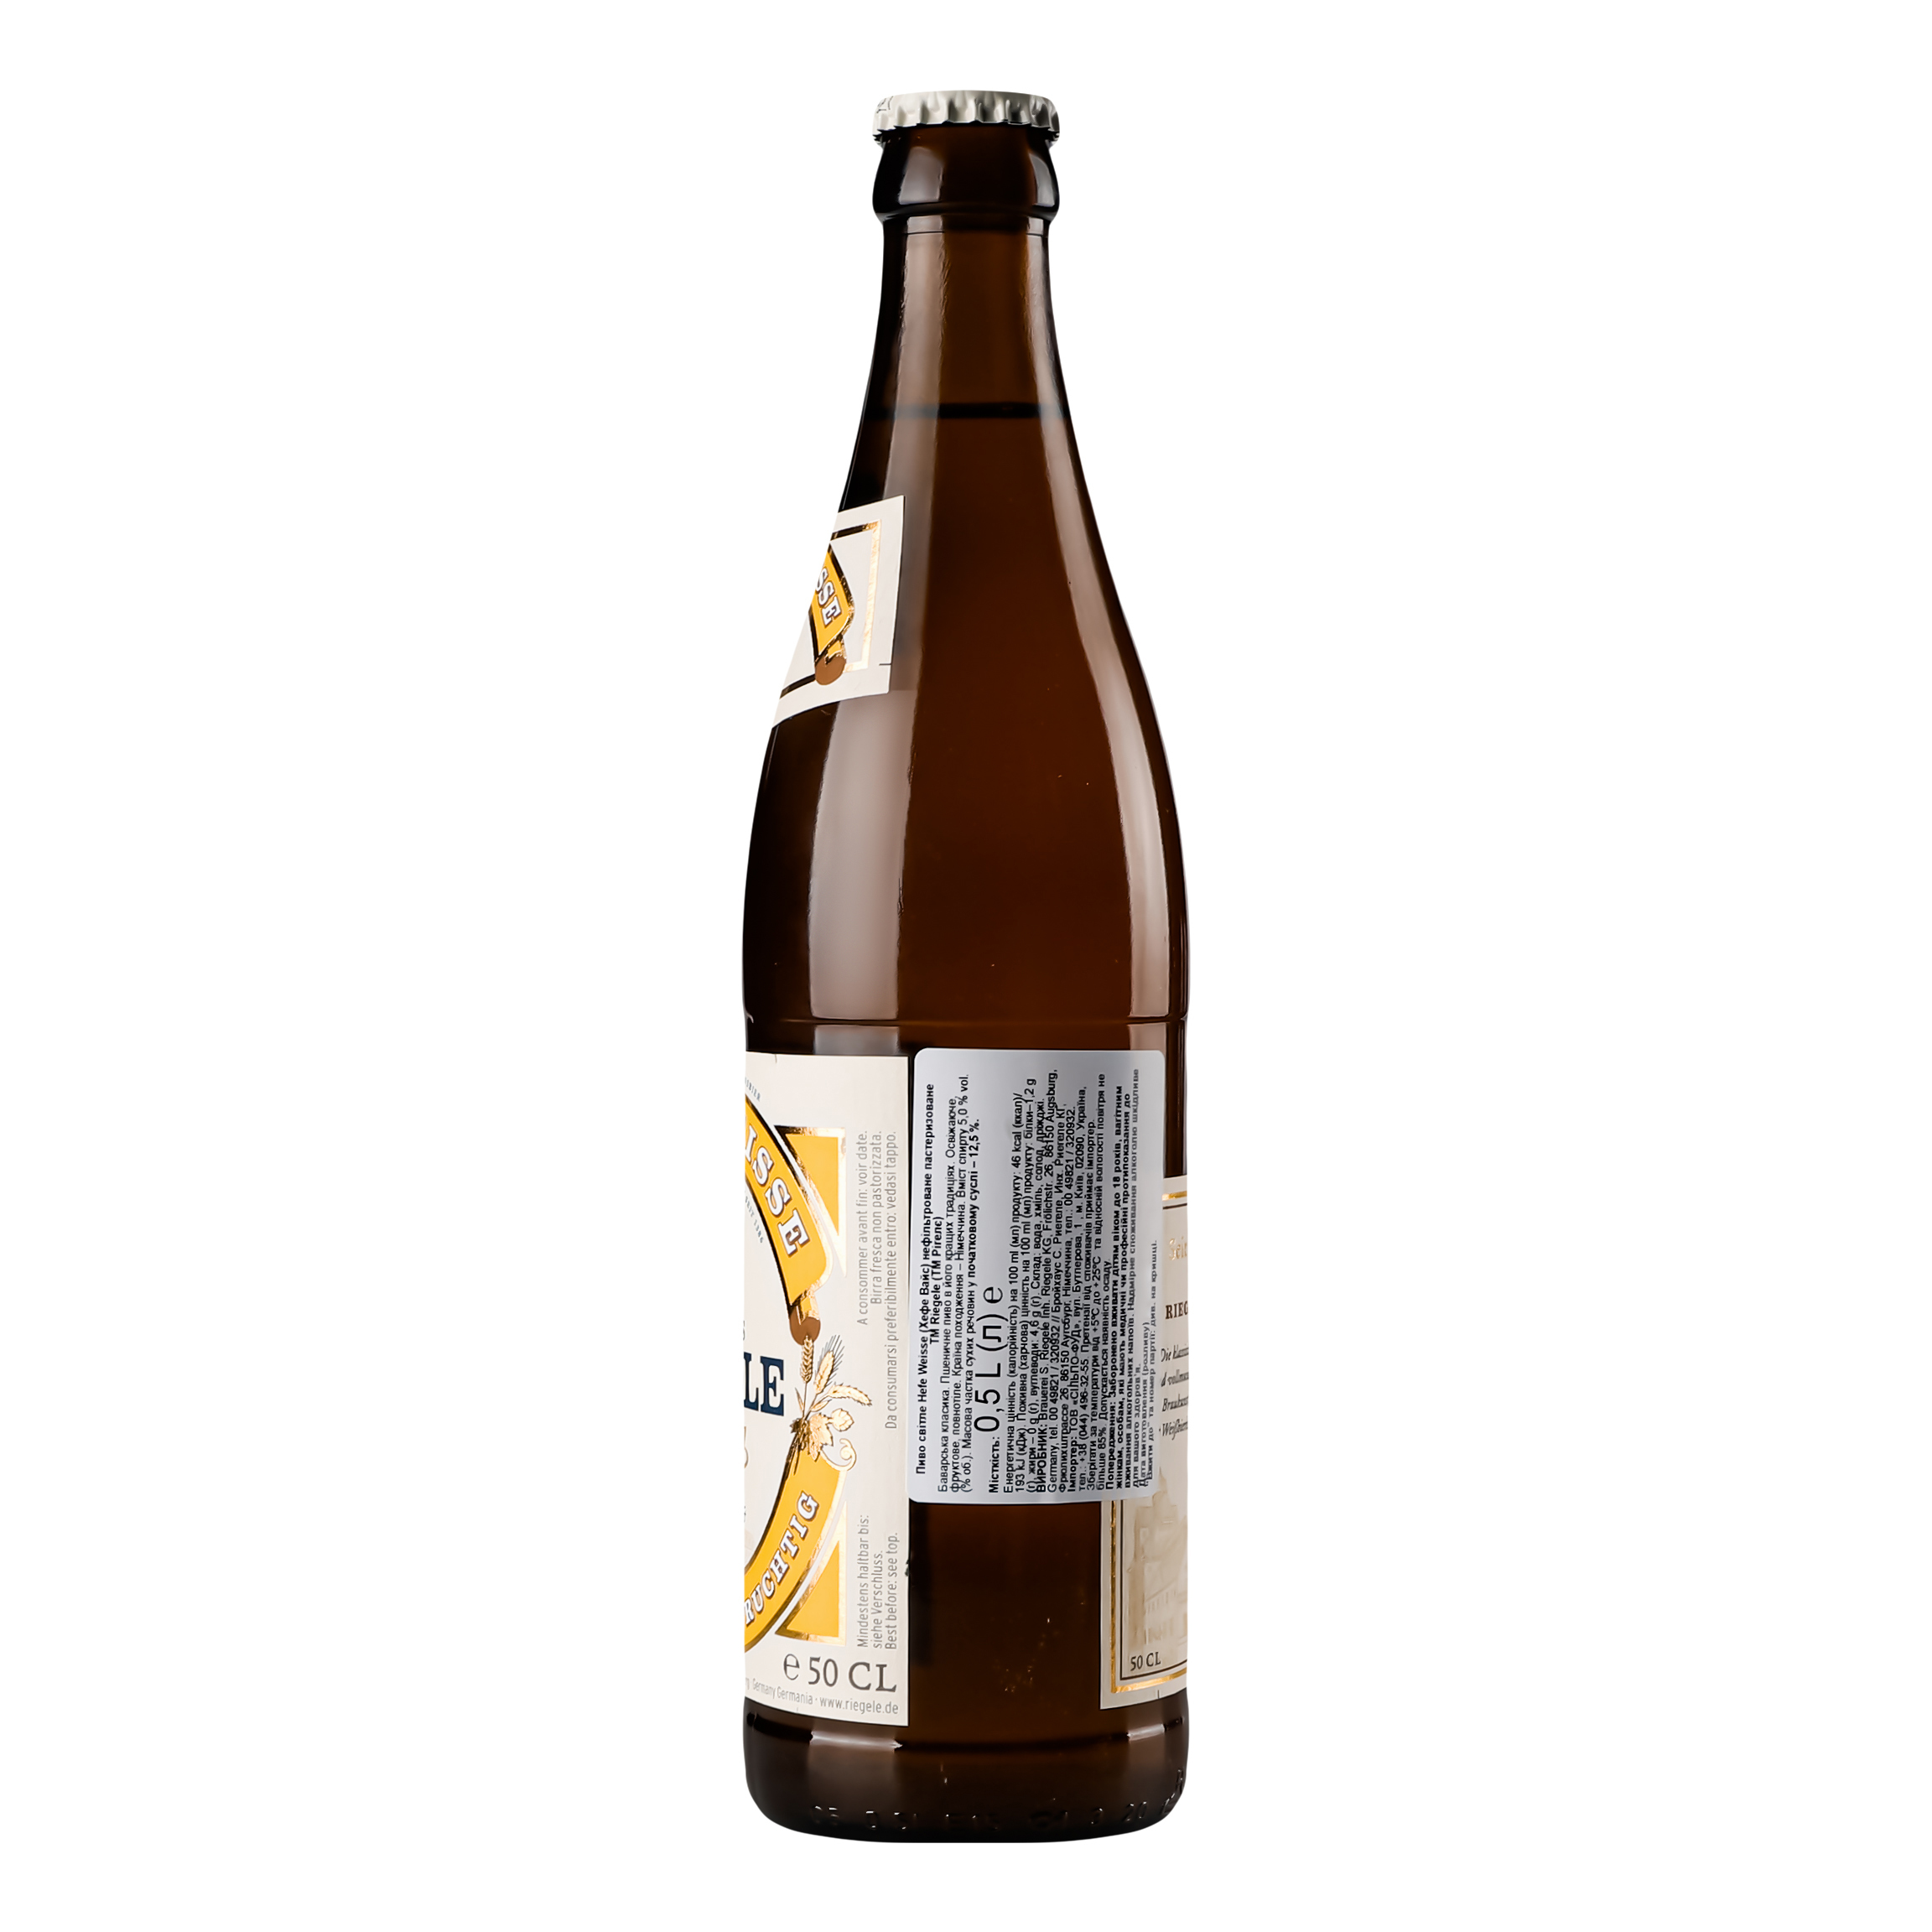 Пиво Riegele Hefe Weisse світле нефільтроване, 5%, 0,5 л (749207) - фото 2